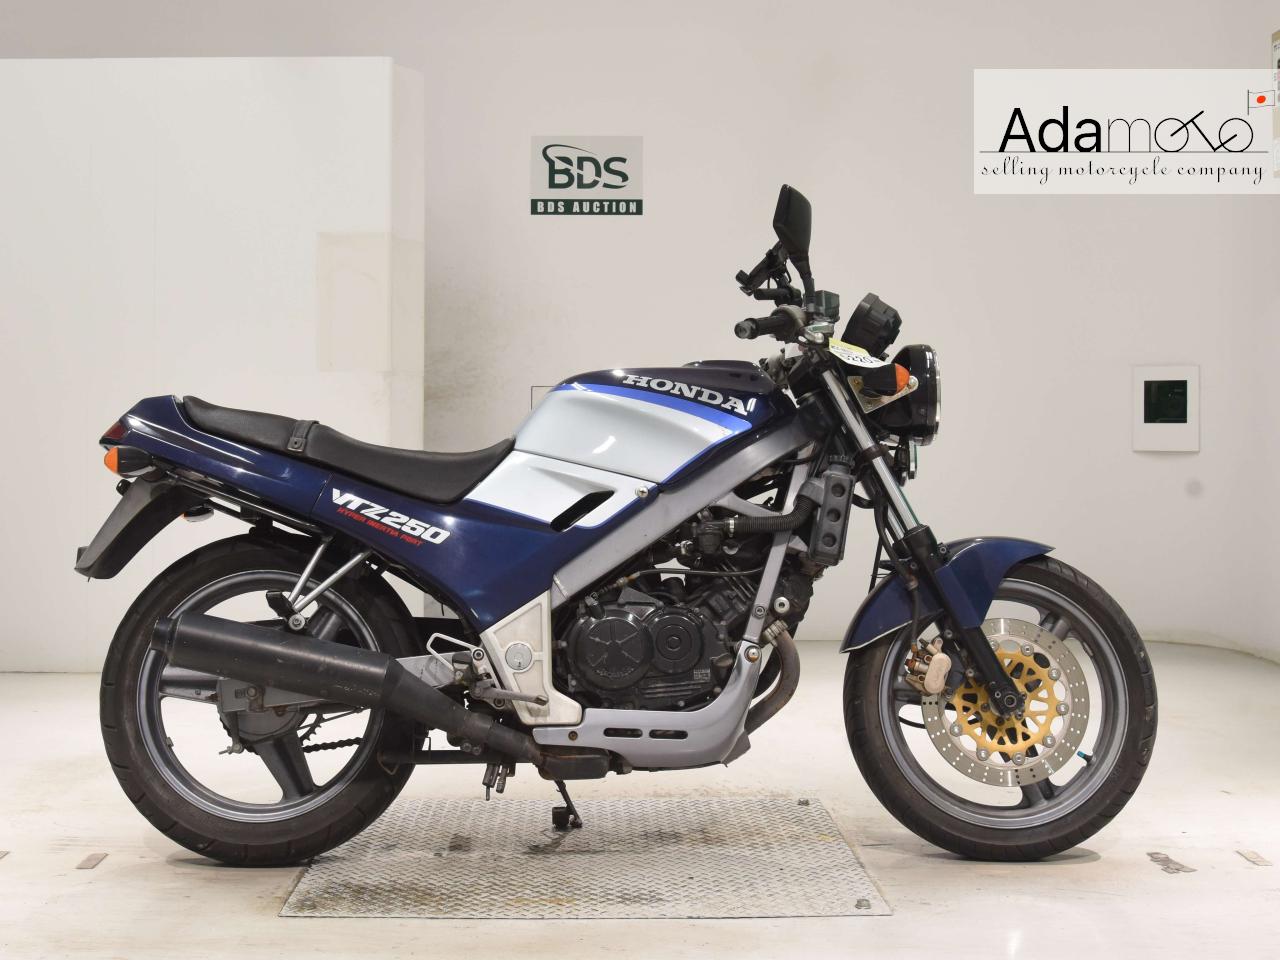 Honda VTZ250 - Adamoto - Motorcycles from Japan